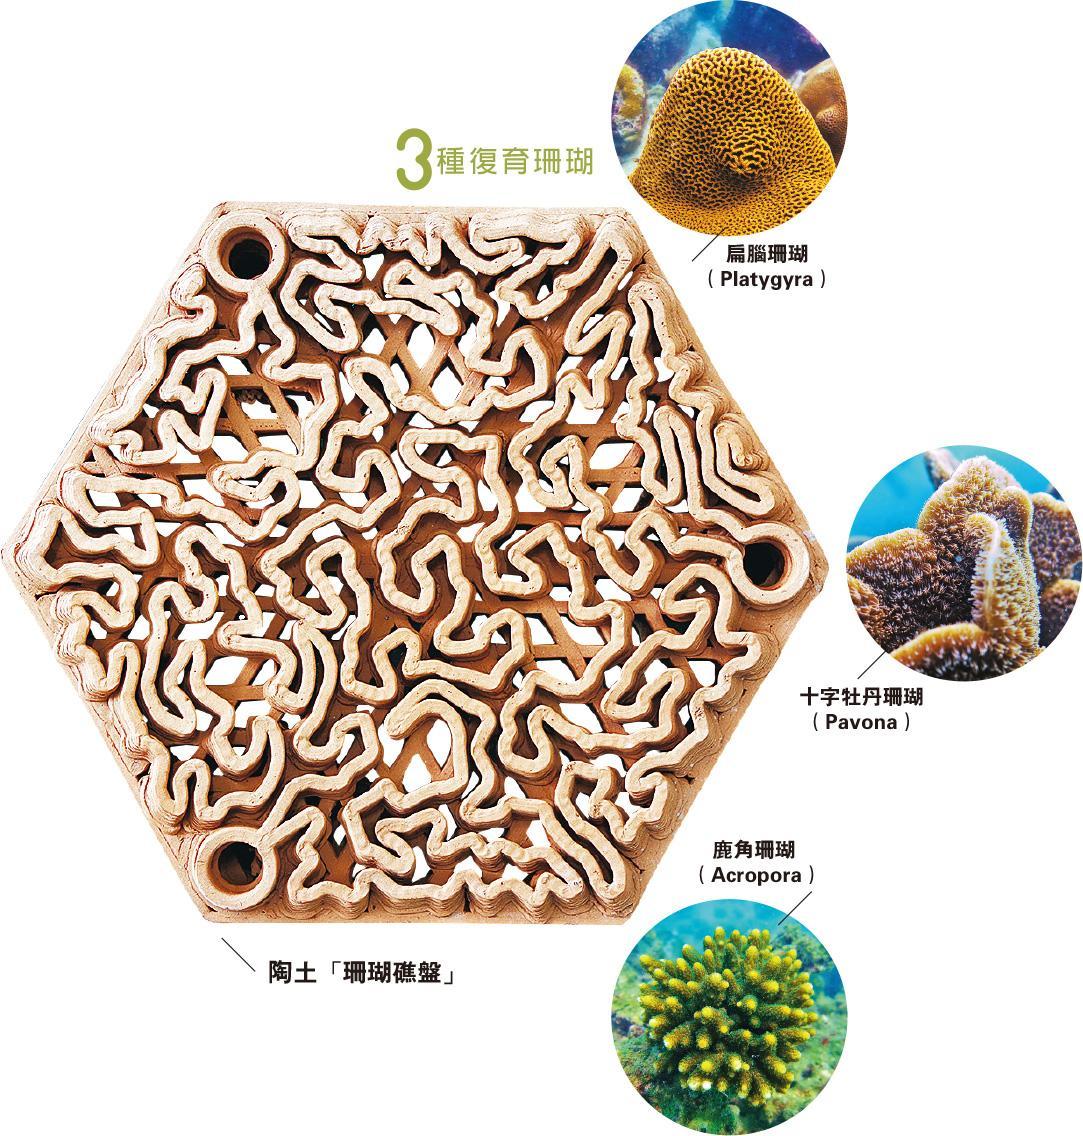 綠色生活 人工礁盤讓珊瑚健康復育 0809 Culture Leisure 明報ol網